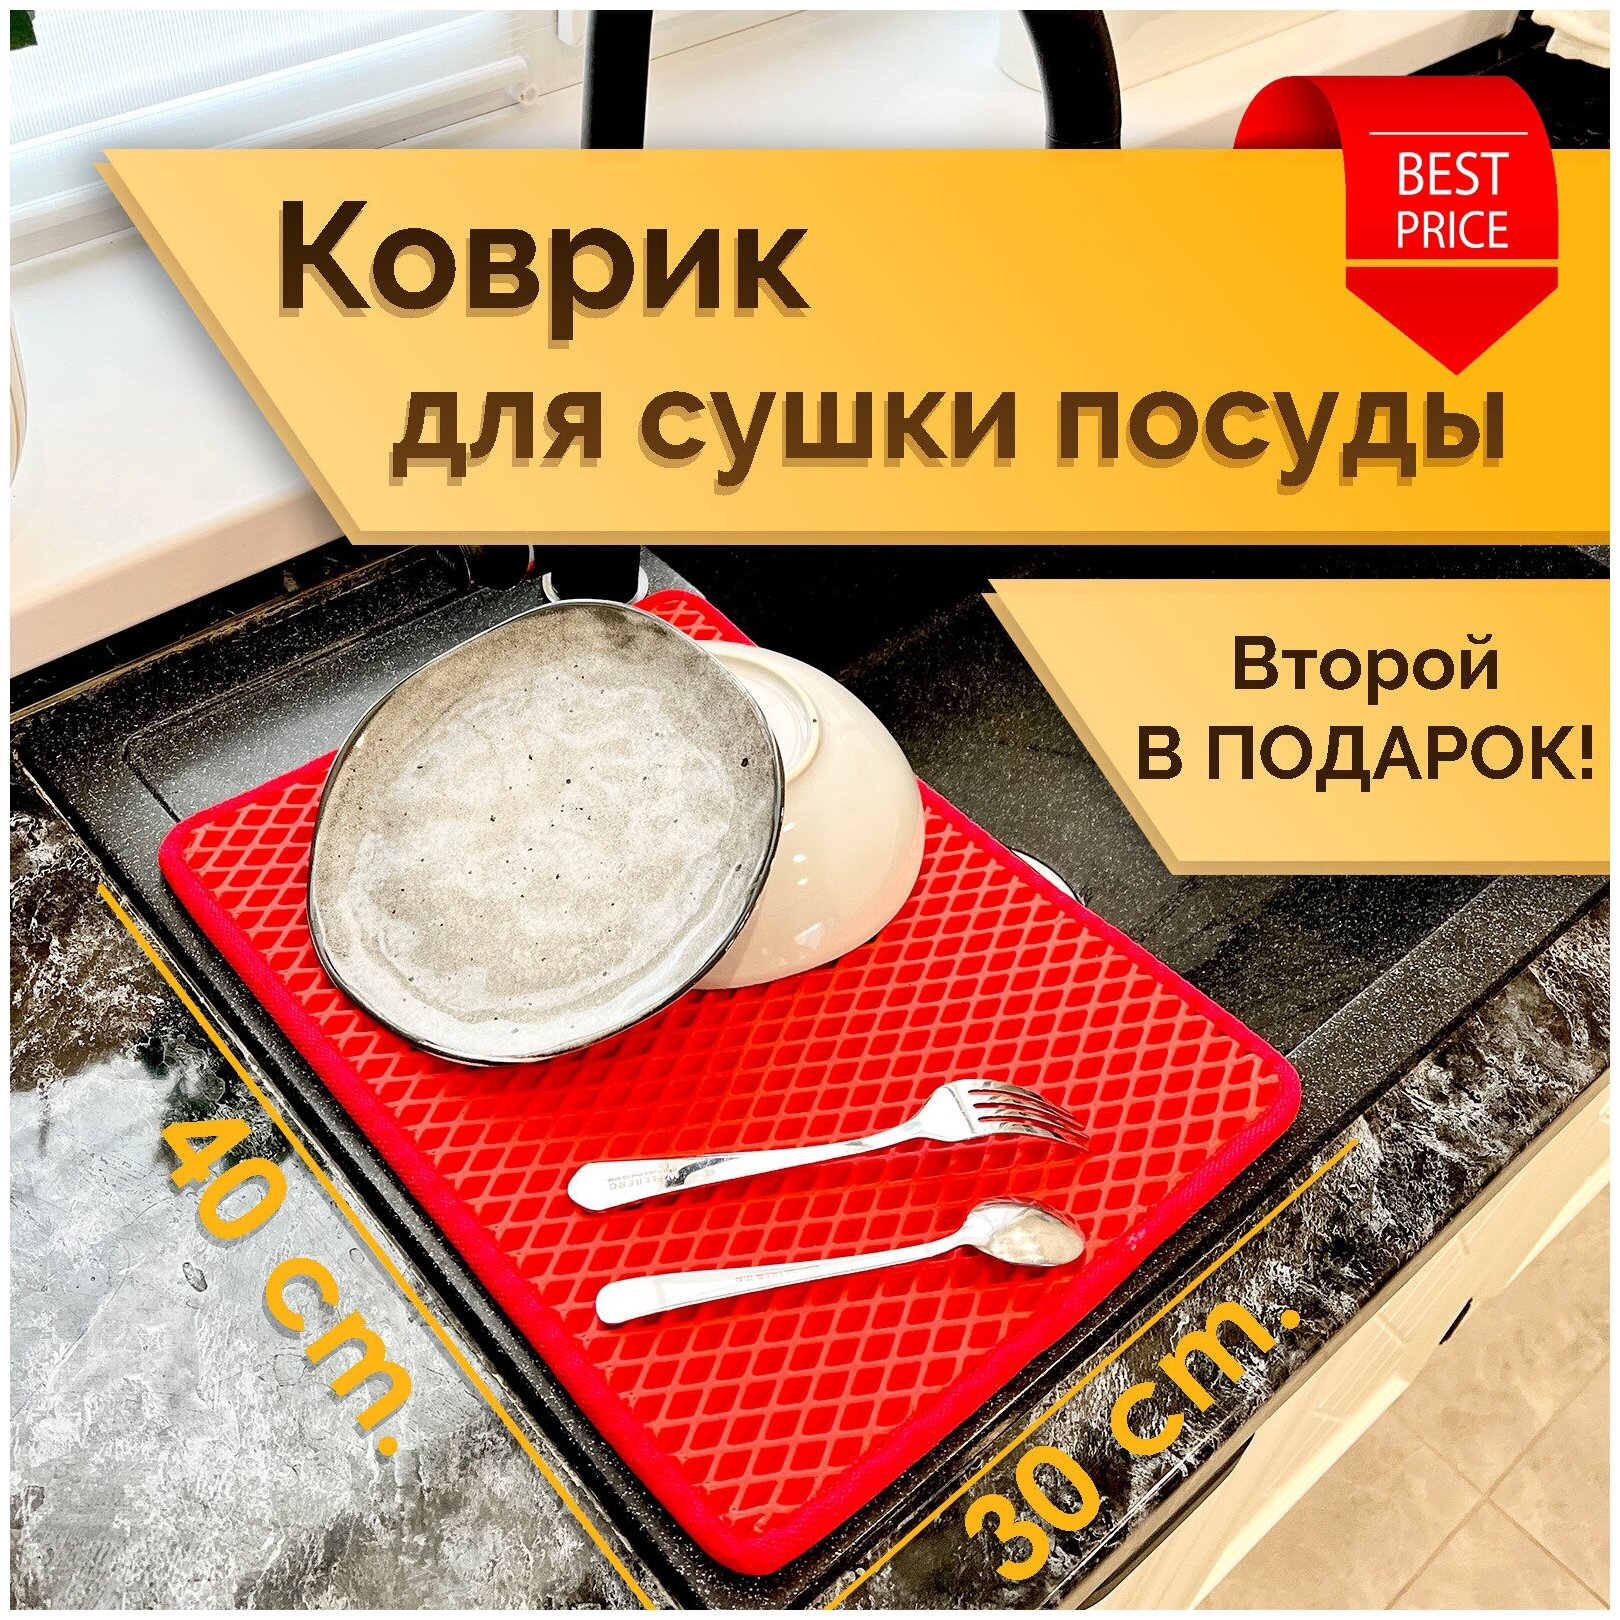 Коврик под посуду / Коврик для сушки посуды ЭВА ромб Красный (комплект из 2х штук 30х40см)